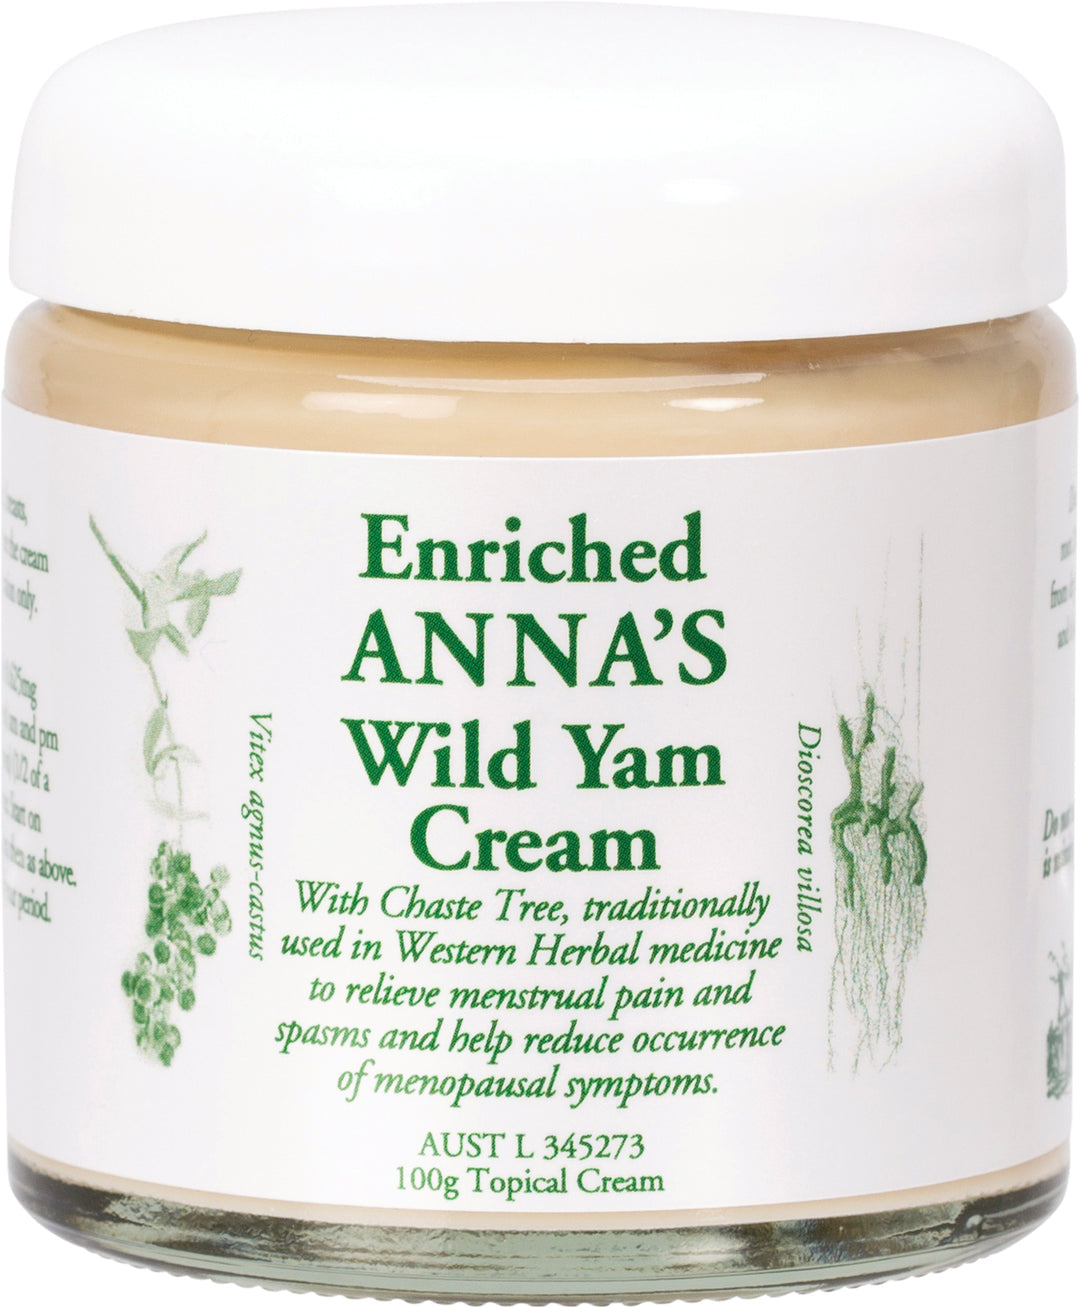 Anna's Wild Yam Cream - Please read supply details